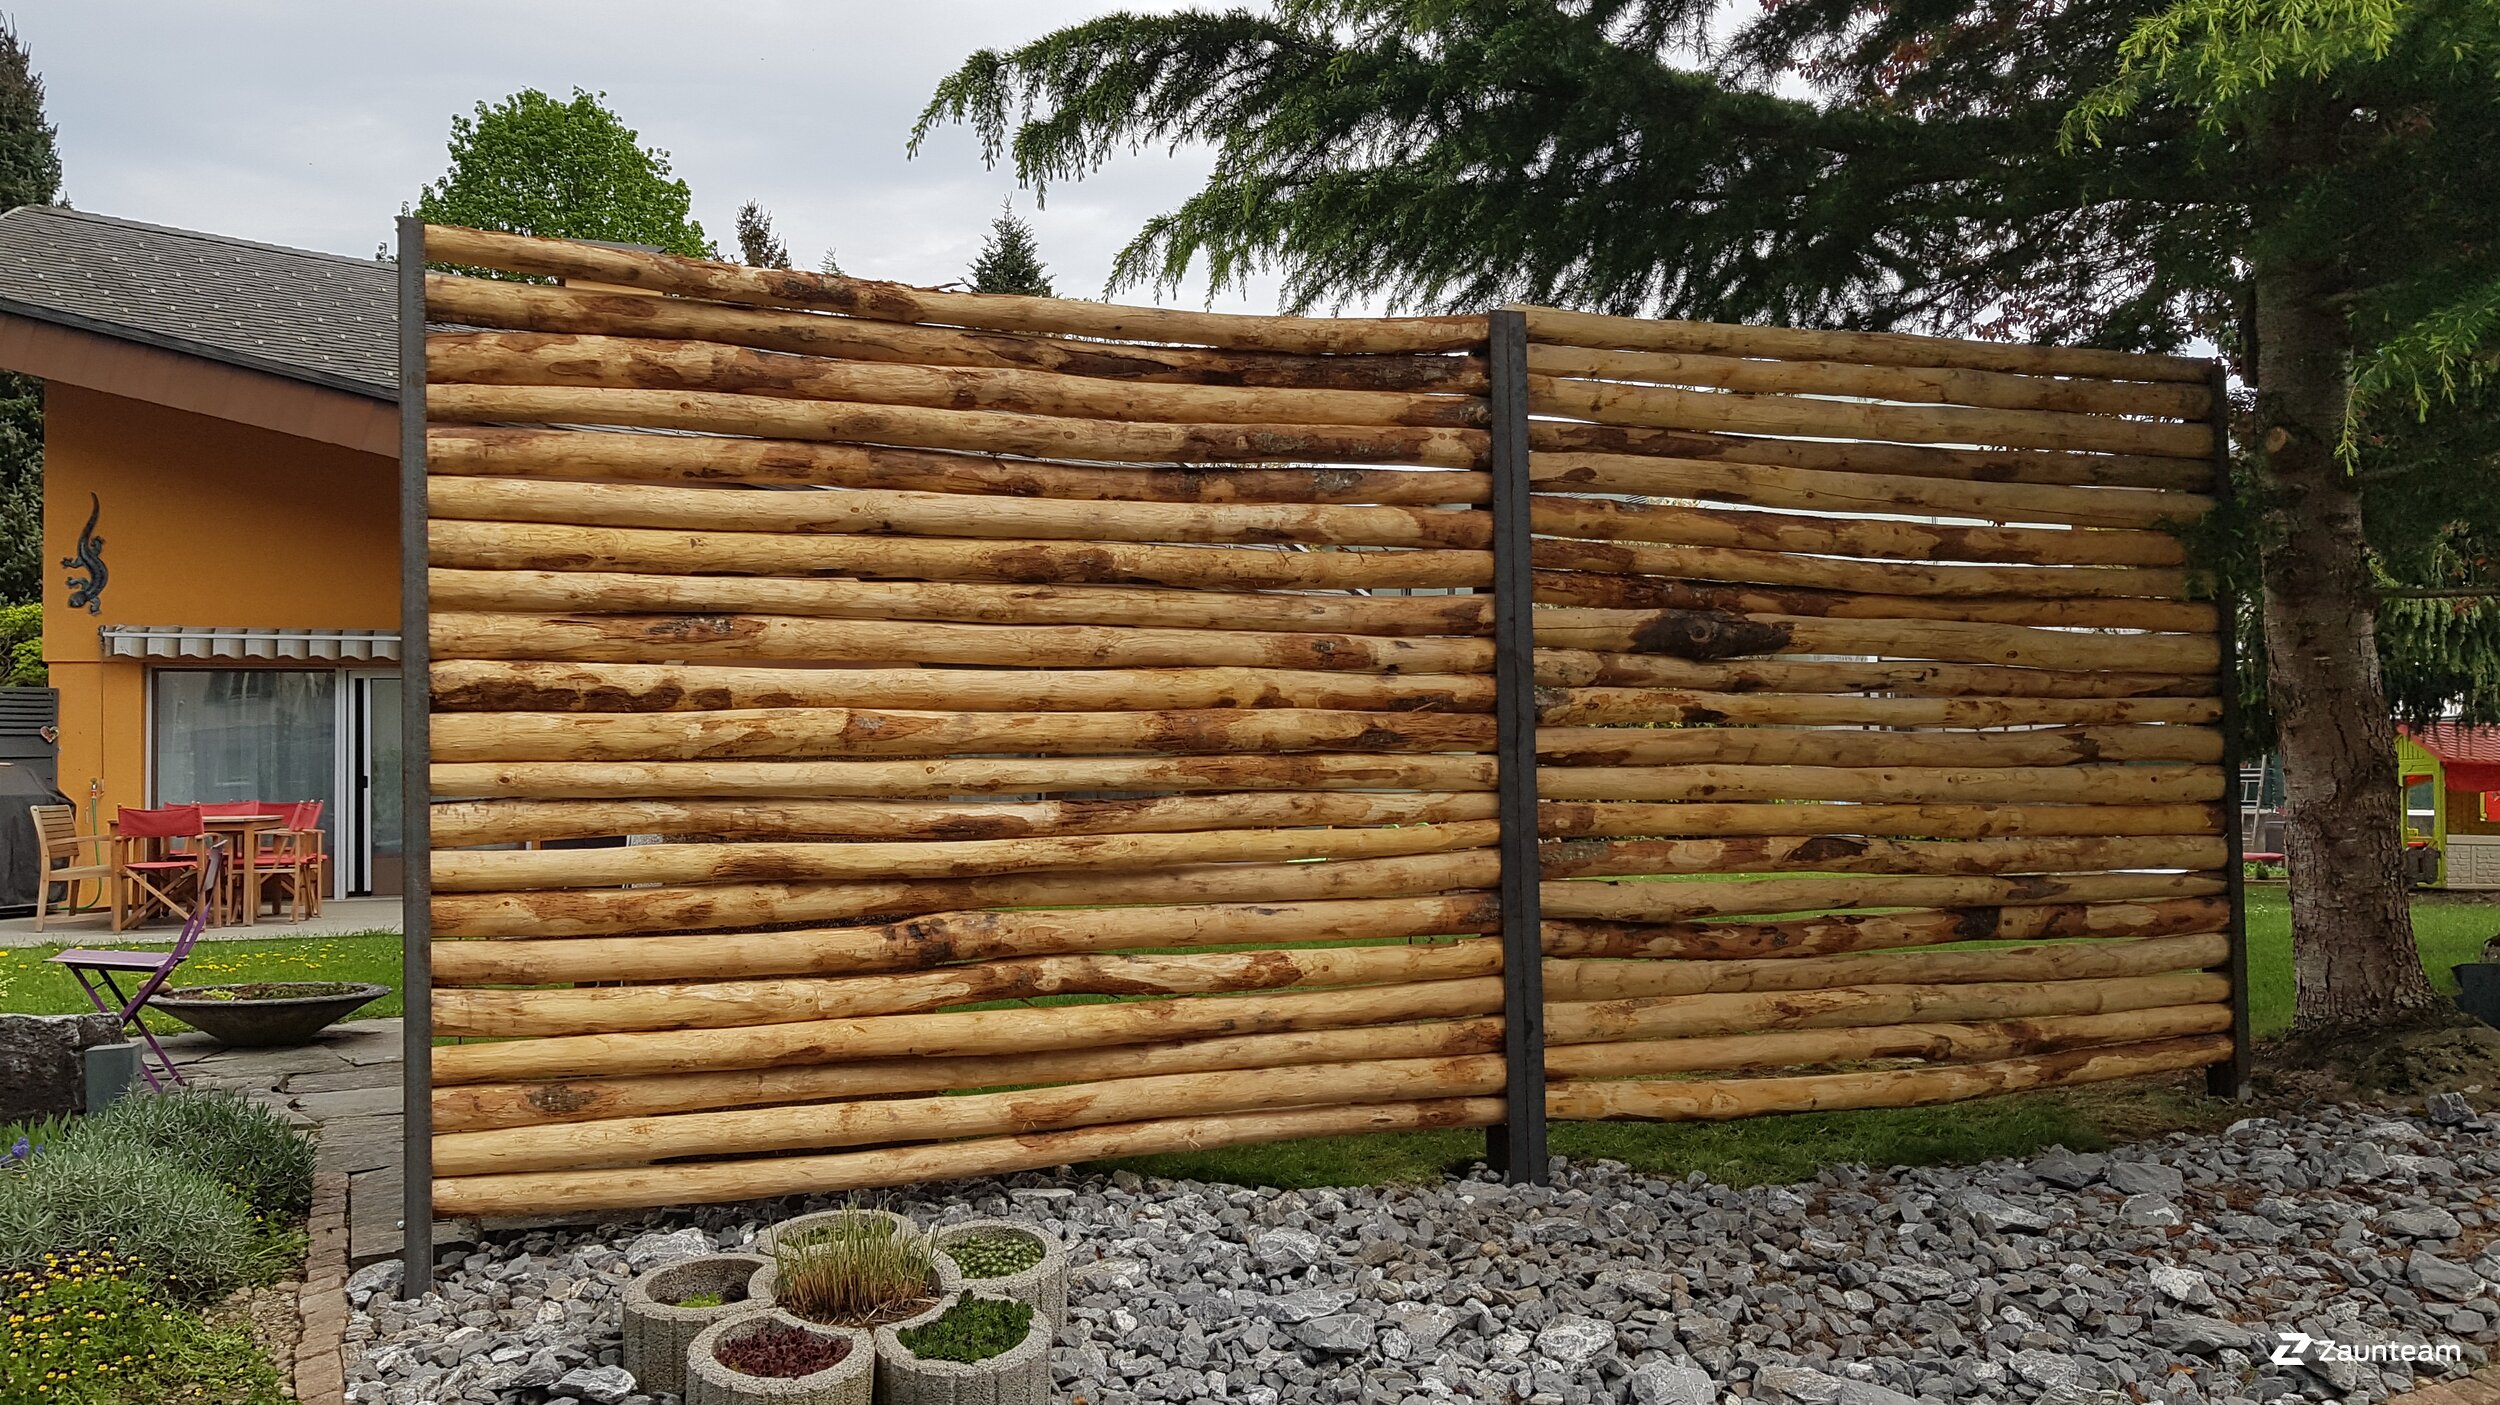 Protection brise-vue en bois de 2018 à 9450 Altstätten Suisse de Zaunteam Rheintal.